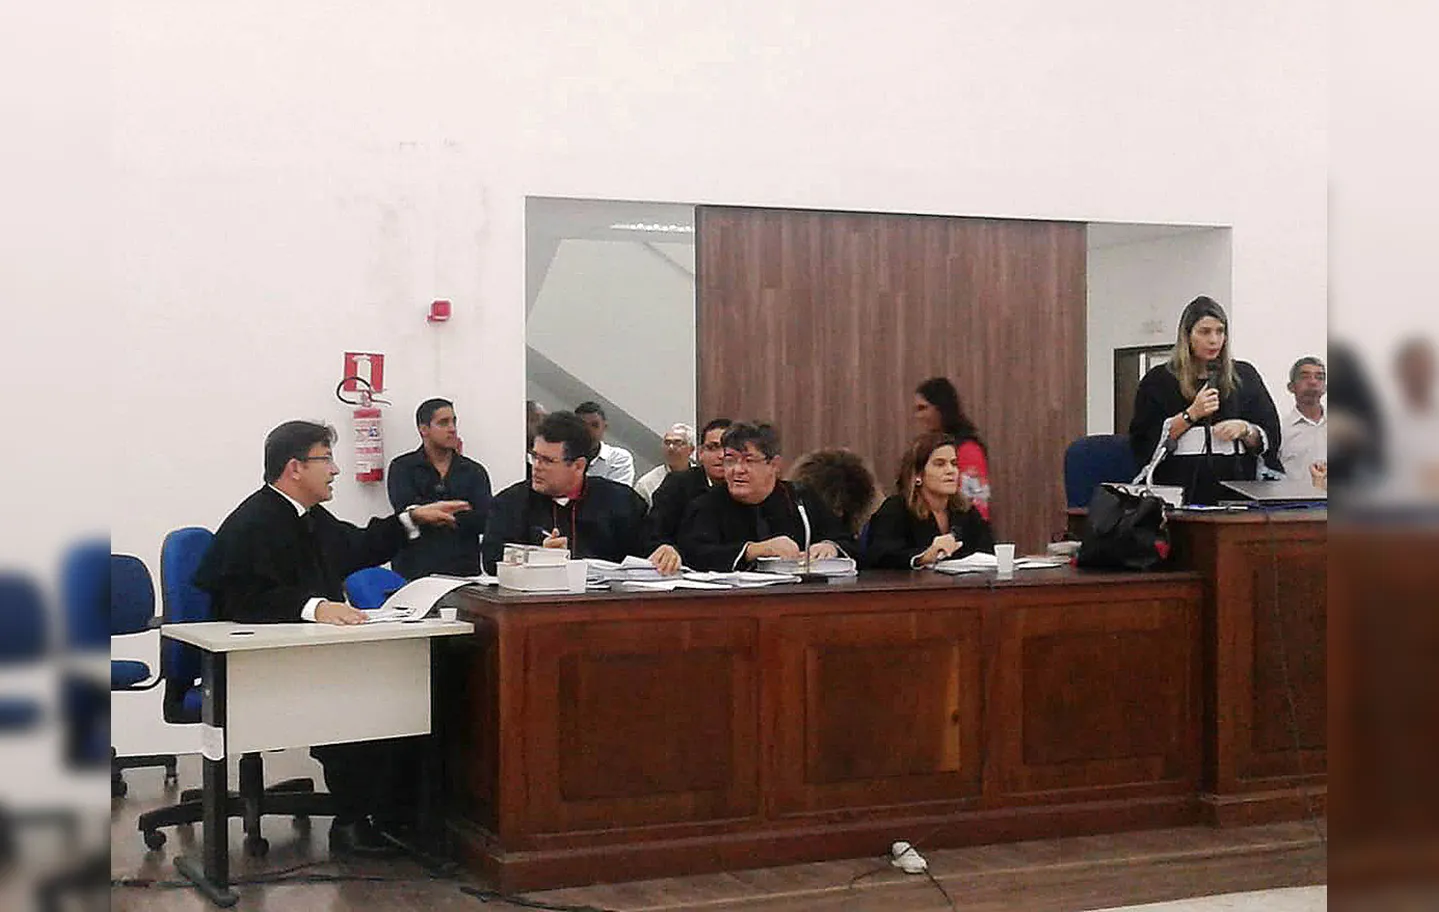 Júri, sob a presidência da juíza Márcia Simões Costa, começou na manhã da quinta-feira passada e durou 20 horas